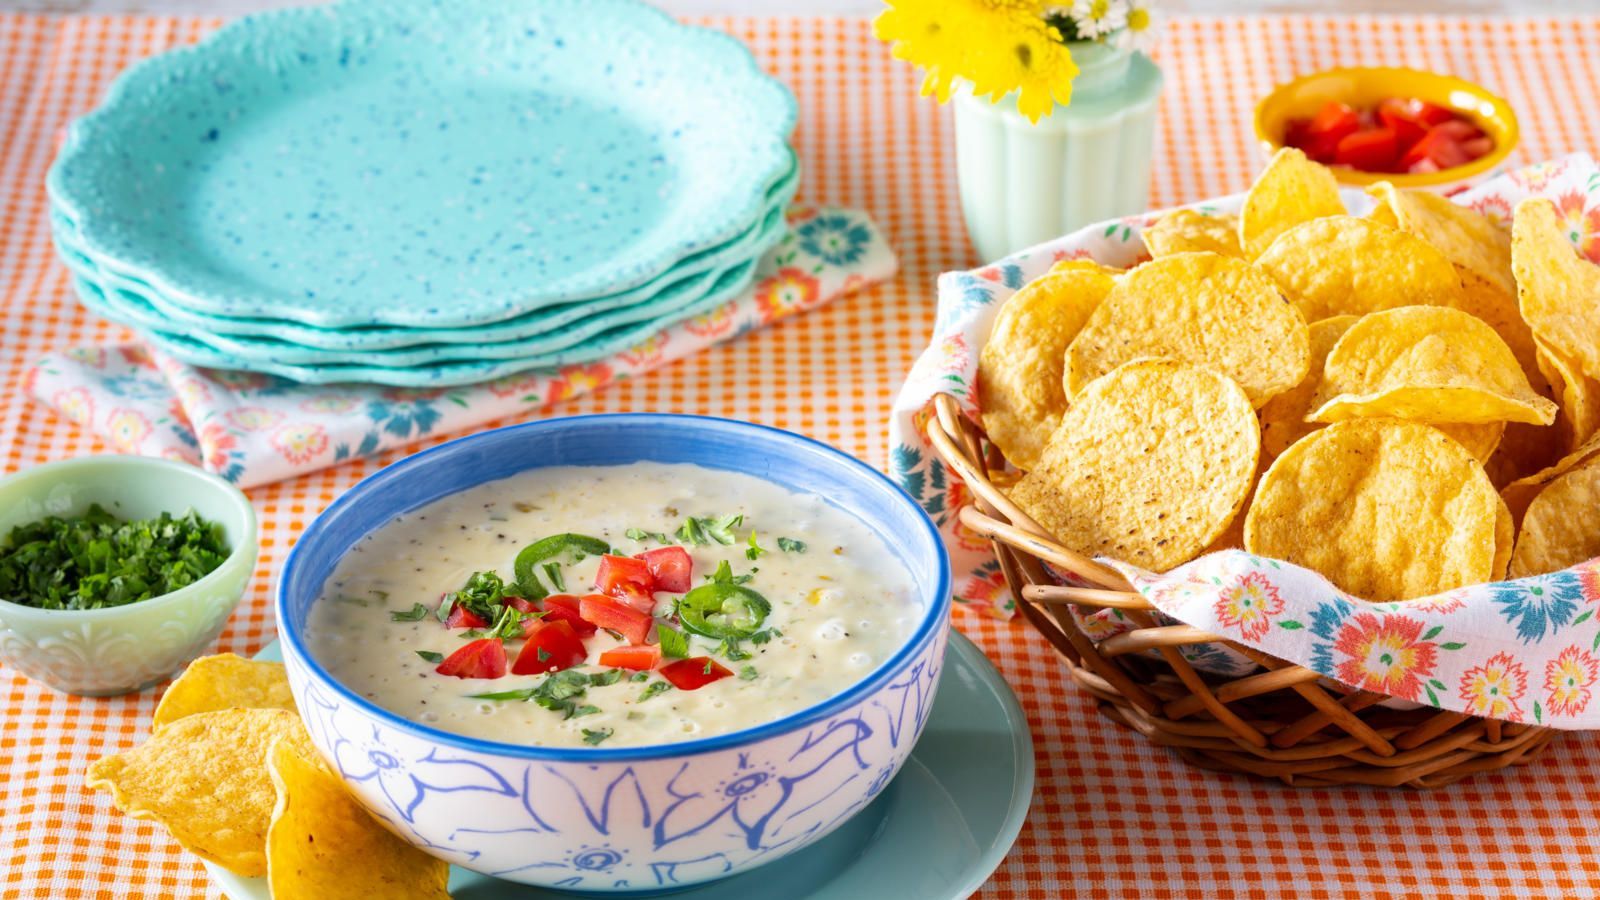 Crock pot white queso dip (& VIDEO!)- White Queso Dip recipe